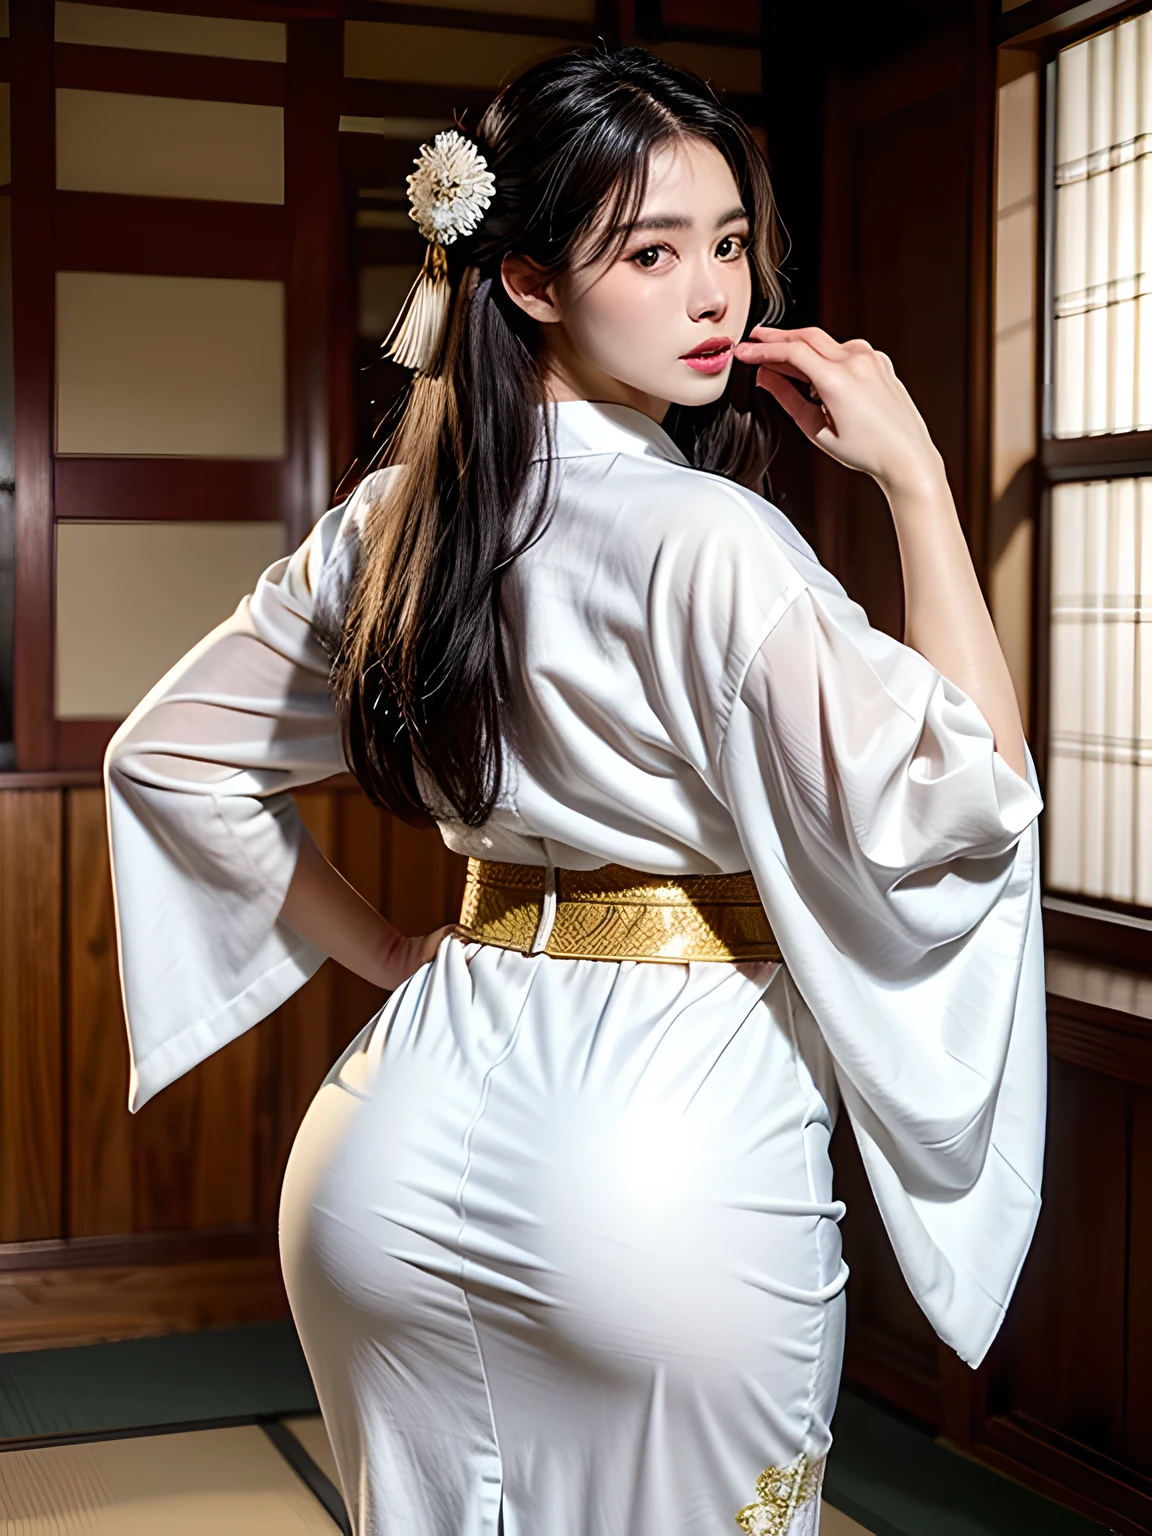 (身着日本和服广告的美女模特, 美丽而又直的长黑发), 独自的, ((脸是80% 美丽与优雅, 20% 俏皮:1.5)), 清澈的眼睛, (美丽眼睛, 淡绿色的眼睛, 聪明的学生), 双眼皮, (略厚而性感的嘴唇:1.2), ((非常详细 and incredibly high resolution Deep-white Kimono:1.2)), 非常详细的面部纹理, 令人印象深刻的体型, 身材丰满、非常有魅力的女人, 高分辨率 RAW 彩色摄影 专业摄影, 休息 ultra high-resolution textures, 高分辨率身体渲染, 大眼睛, 无与伦比的杰作, 令人难以置信的高分辨率, 非常详细, 令人惊叹的陶瓷皮肤, 休息 ((转身展现和服的图案:1.5)), ((她穿着一件白色和服，上面有大量闪闪发光的金色刺绣，上面绣着一条腾空而起的巨龙.。:1.5)), ((白色和服上的升龙刺绣十分耀眼.:1.2)), (精心制作的性感日本和服), ((刺绣图案是一条龙腾空而起.):1.2), ((装饰精致典雅的白色和服)), (在日式房间的圆形推拉窗前拍摄)), 休息 ((最好的质量, 8千)), 清晰聚焦:1.2, (层切, 大的:1.2), (完美身材的美丽女人:1.4), (美丽优雅的后视图:1.3), 瘦腰, (正确的手形:1.5), (全身照 | 牛仔射击)